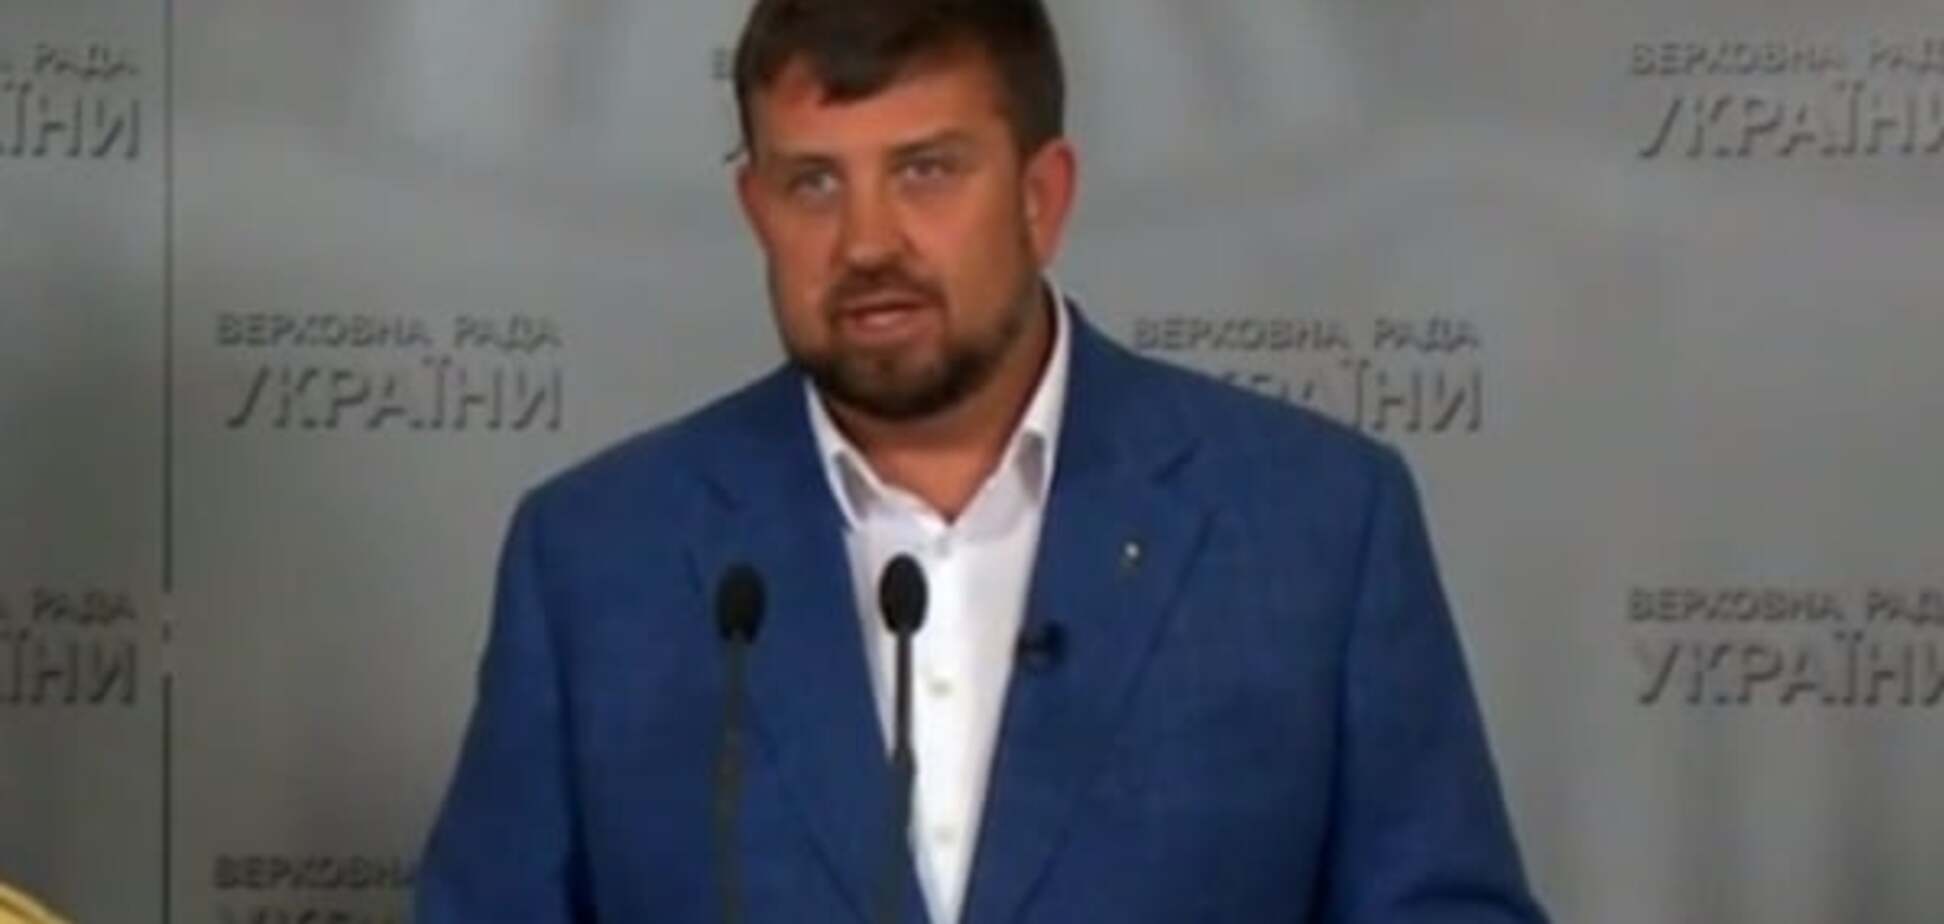 Недава о скандале с Лещенко: Украину захлестнул шквал популизма